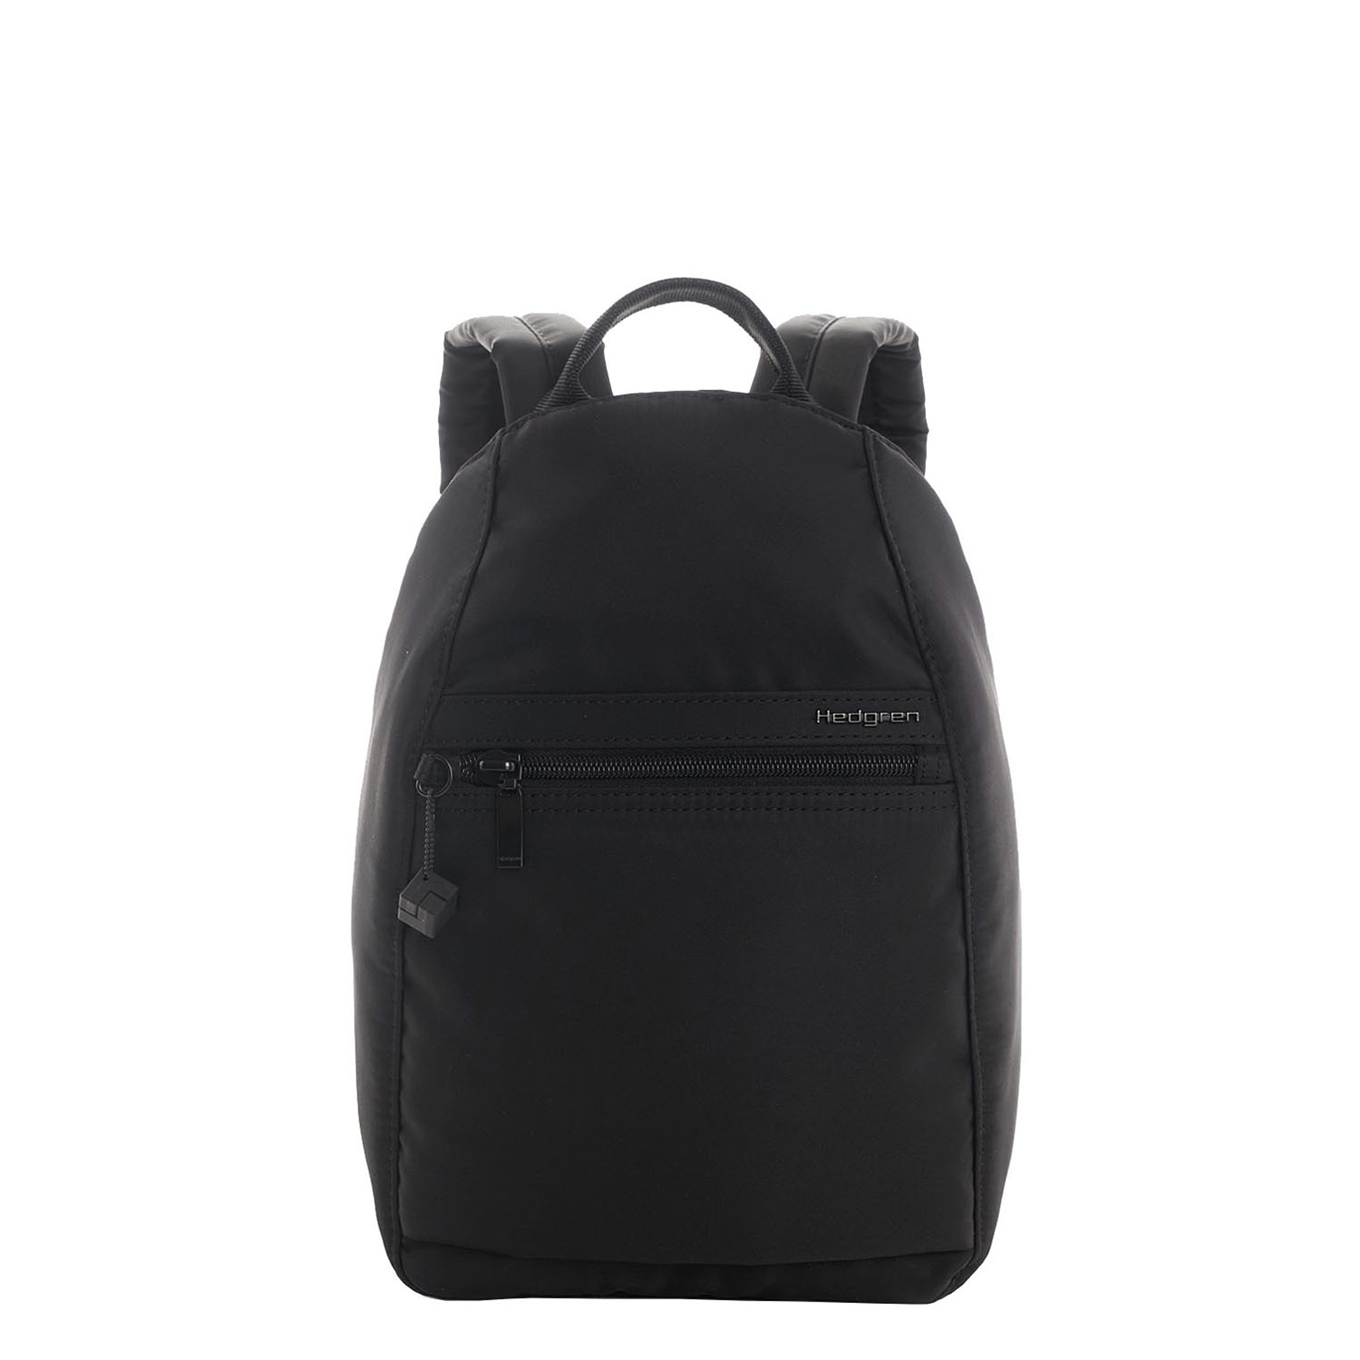 Hedgren Inner City Vogue Rugzak rugzak black backpack